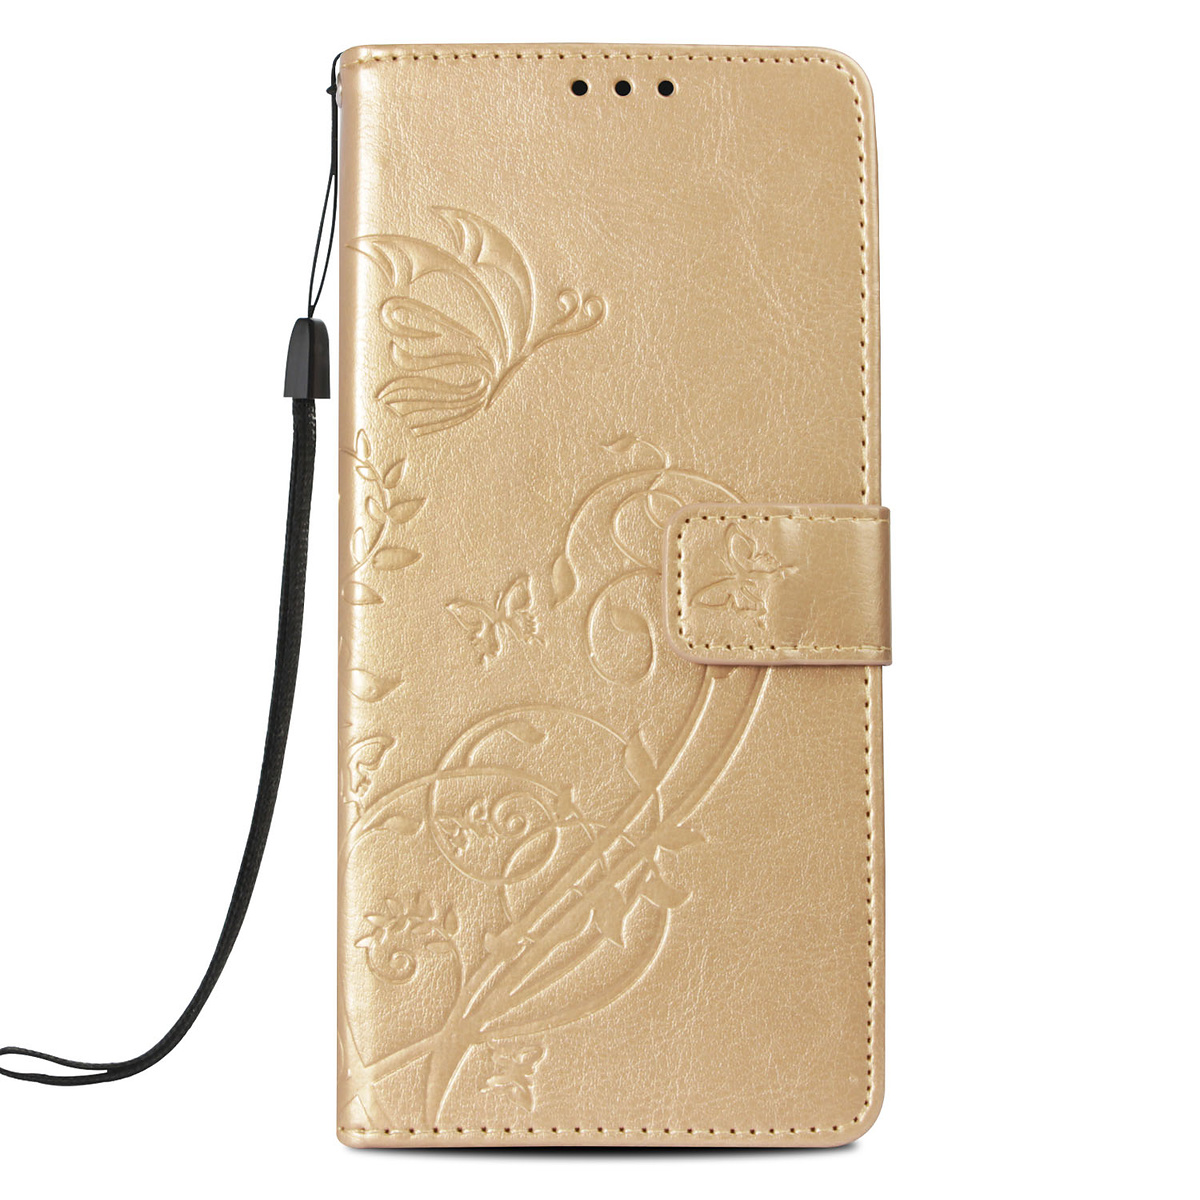 Läderfodral med vristband och stöd, iPhone XR, guld